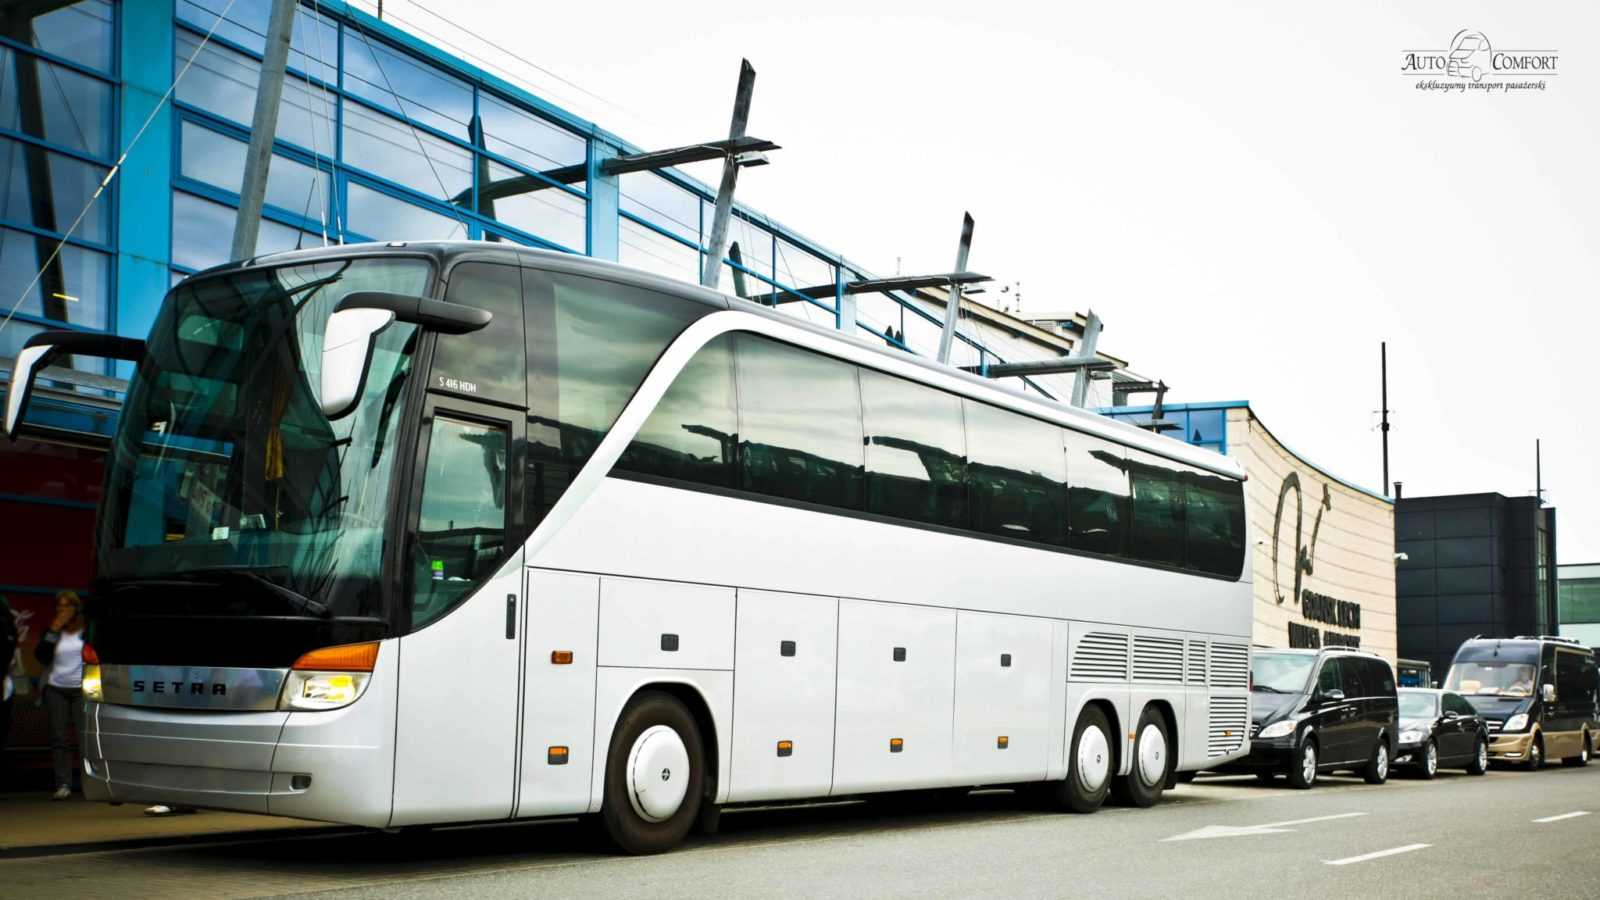 transport vip uslugi concierge wynajem busow autokarow przewoz osob gdansk gdynia sopot trojmiasto autocomfort (1)